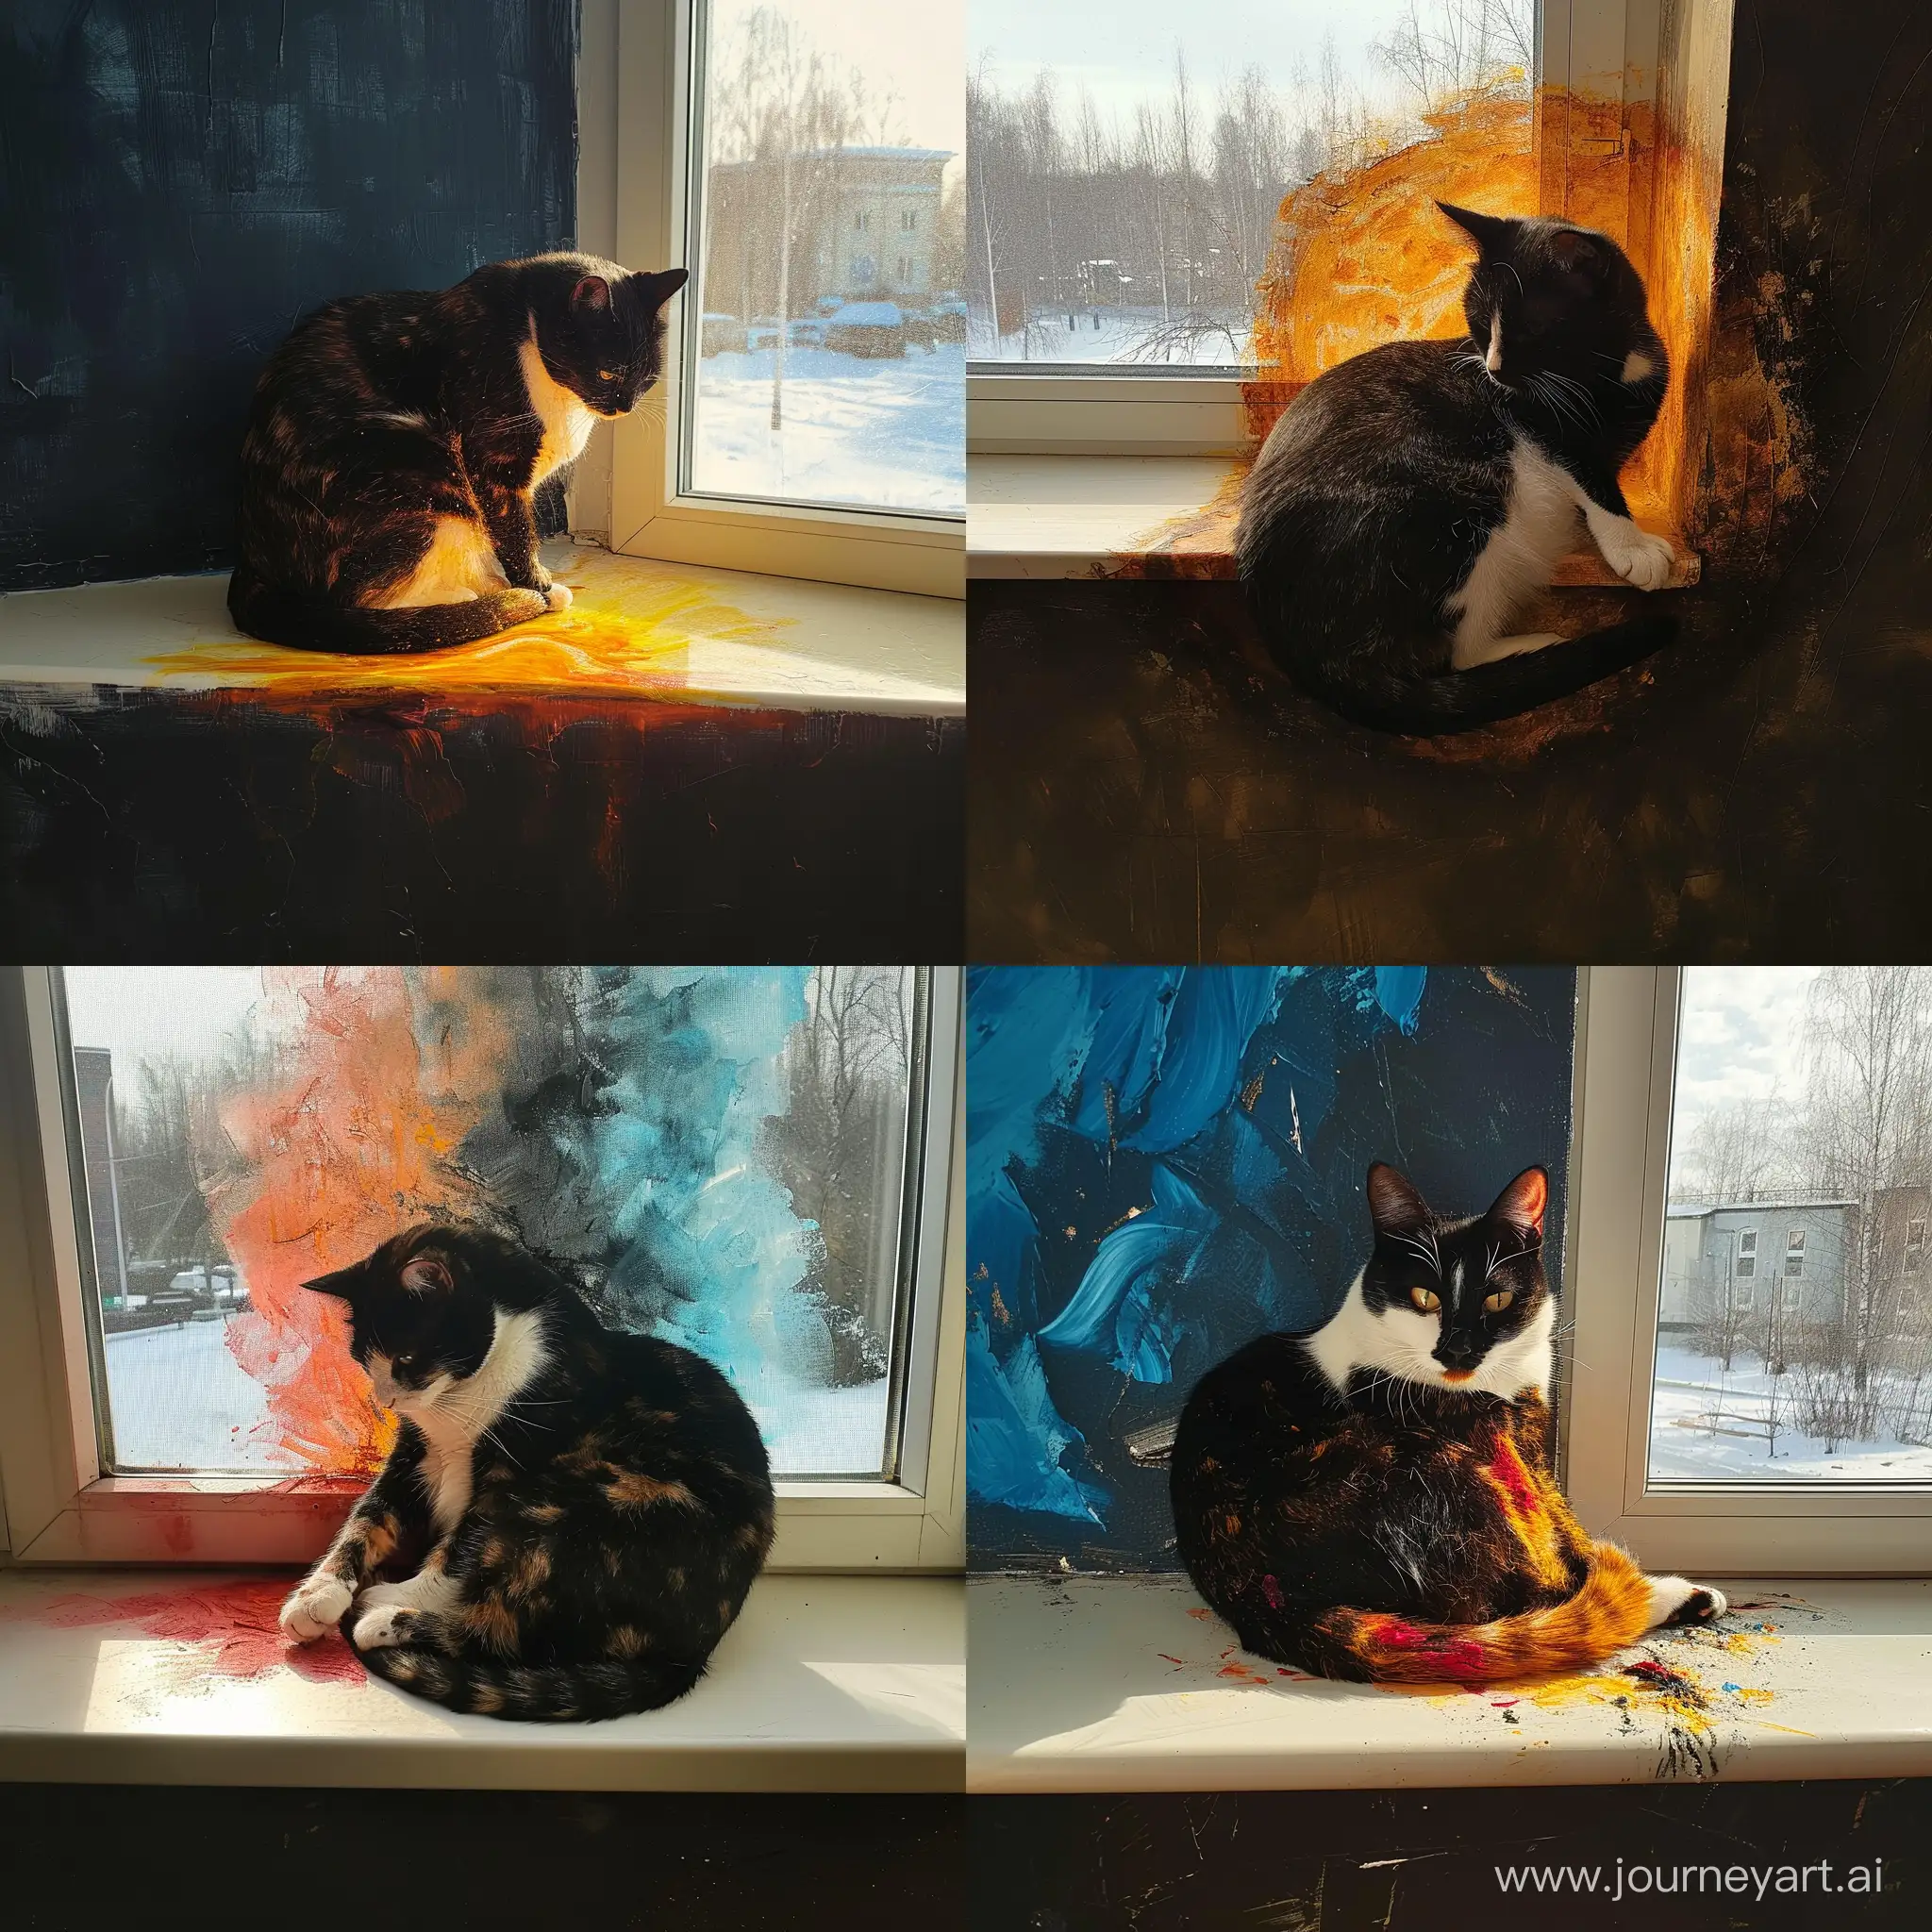 https://i.postimg.cc/9MQh1vKj/IMG-20240121-110211-686.jpg огненный кот сидит согнутый::1.1 пополам